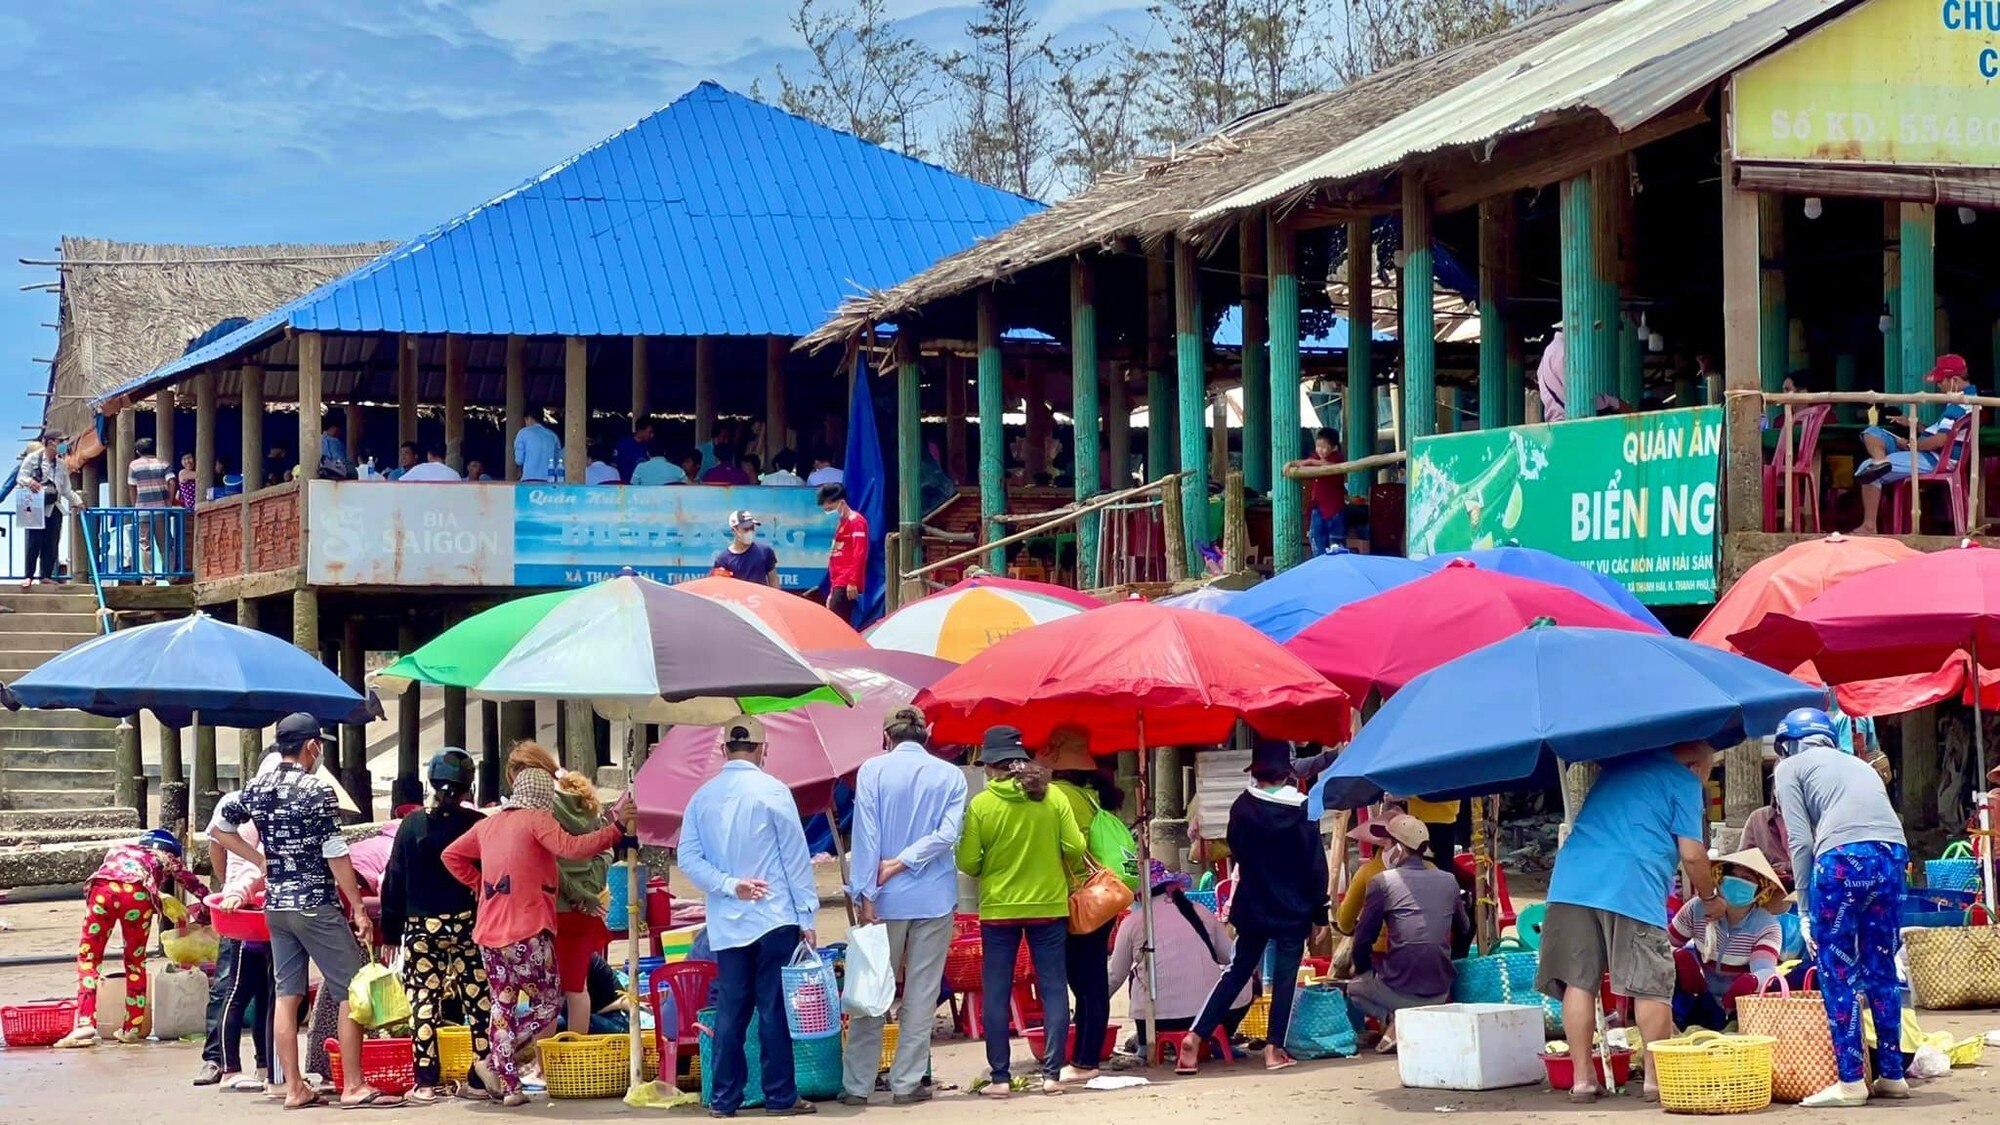 Chợ biển ở một huyện của Bến Tre họp ngay mép sóng, mua bán la liệt tôm, cua, cá, ốc ngon, lạ mắt- Ảnh 9.